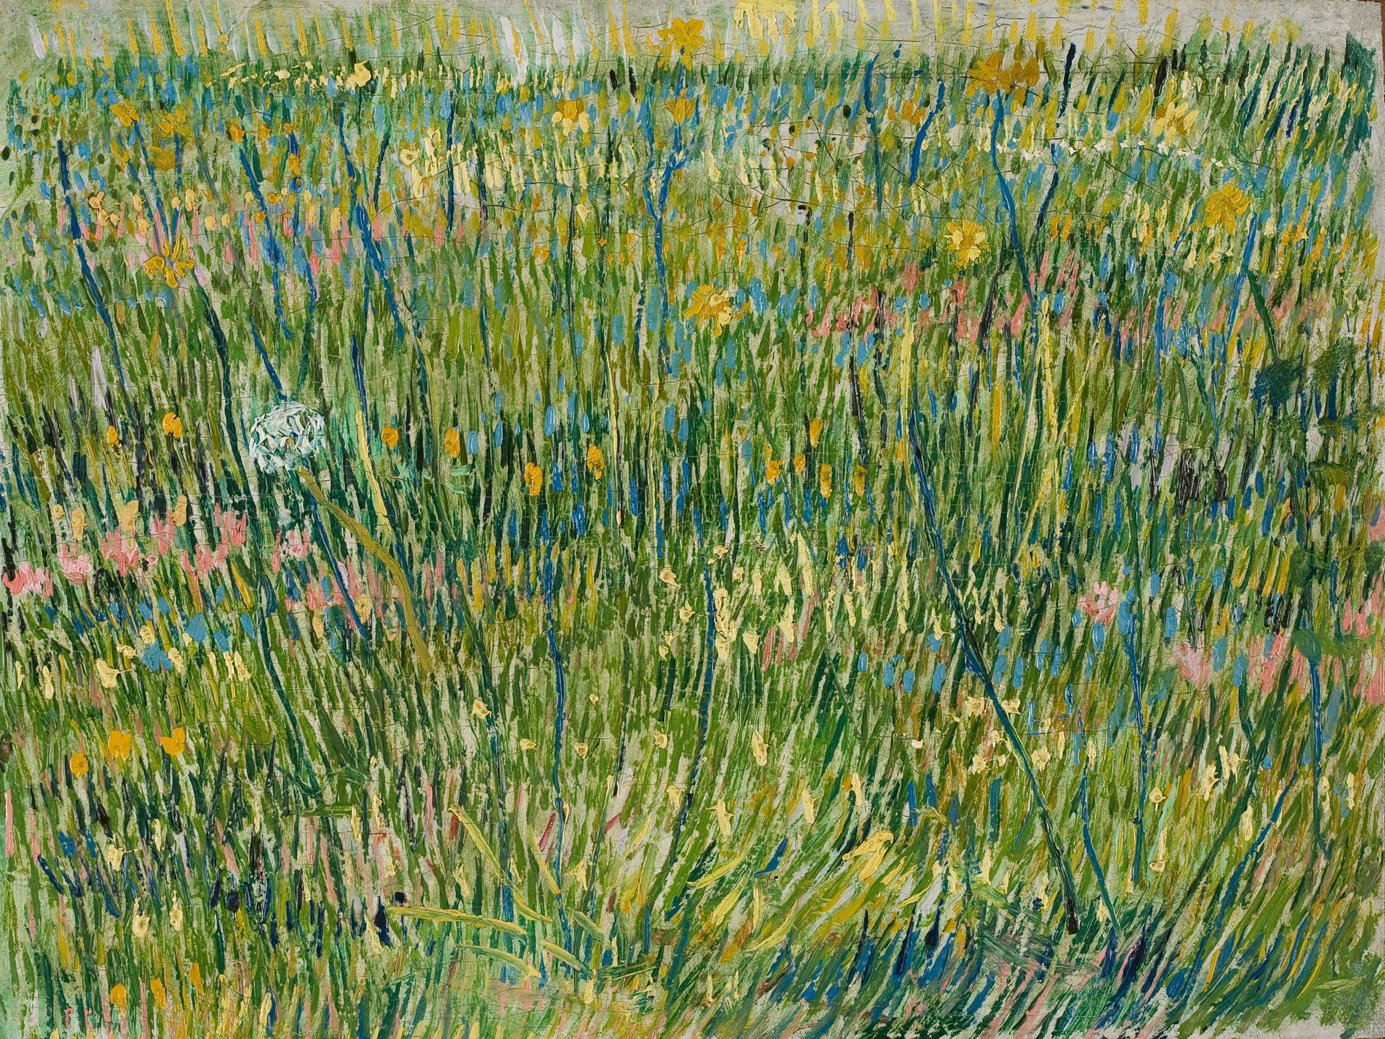 풀밭 (Patch of Grass) by 빈센트 반 고흐 - 1887 - 39 cm x 30 cm 